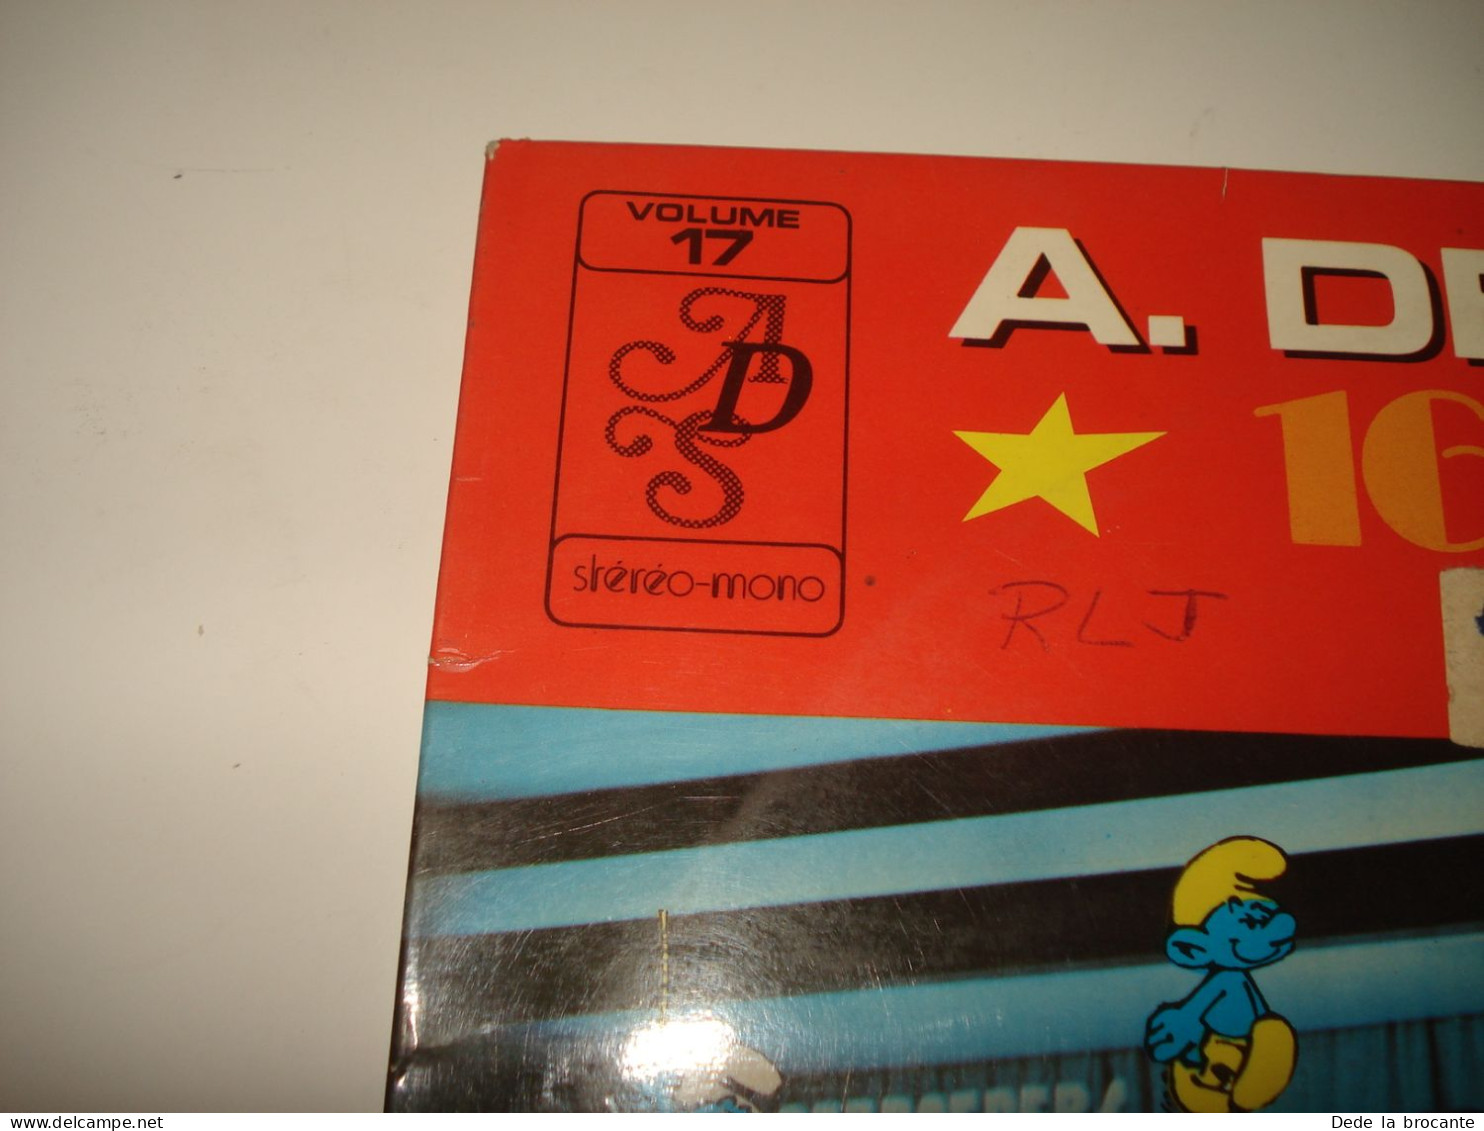 B13 / Schtroumpfs  – Decap-Sound N°17 - LP  - D.C. 117 - BE 19??  NM/VG - Disques & CD